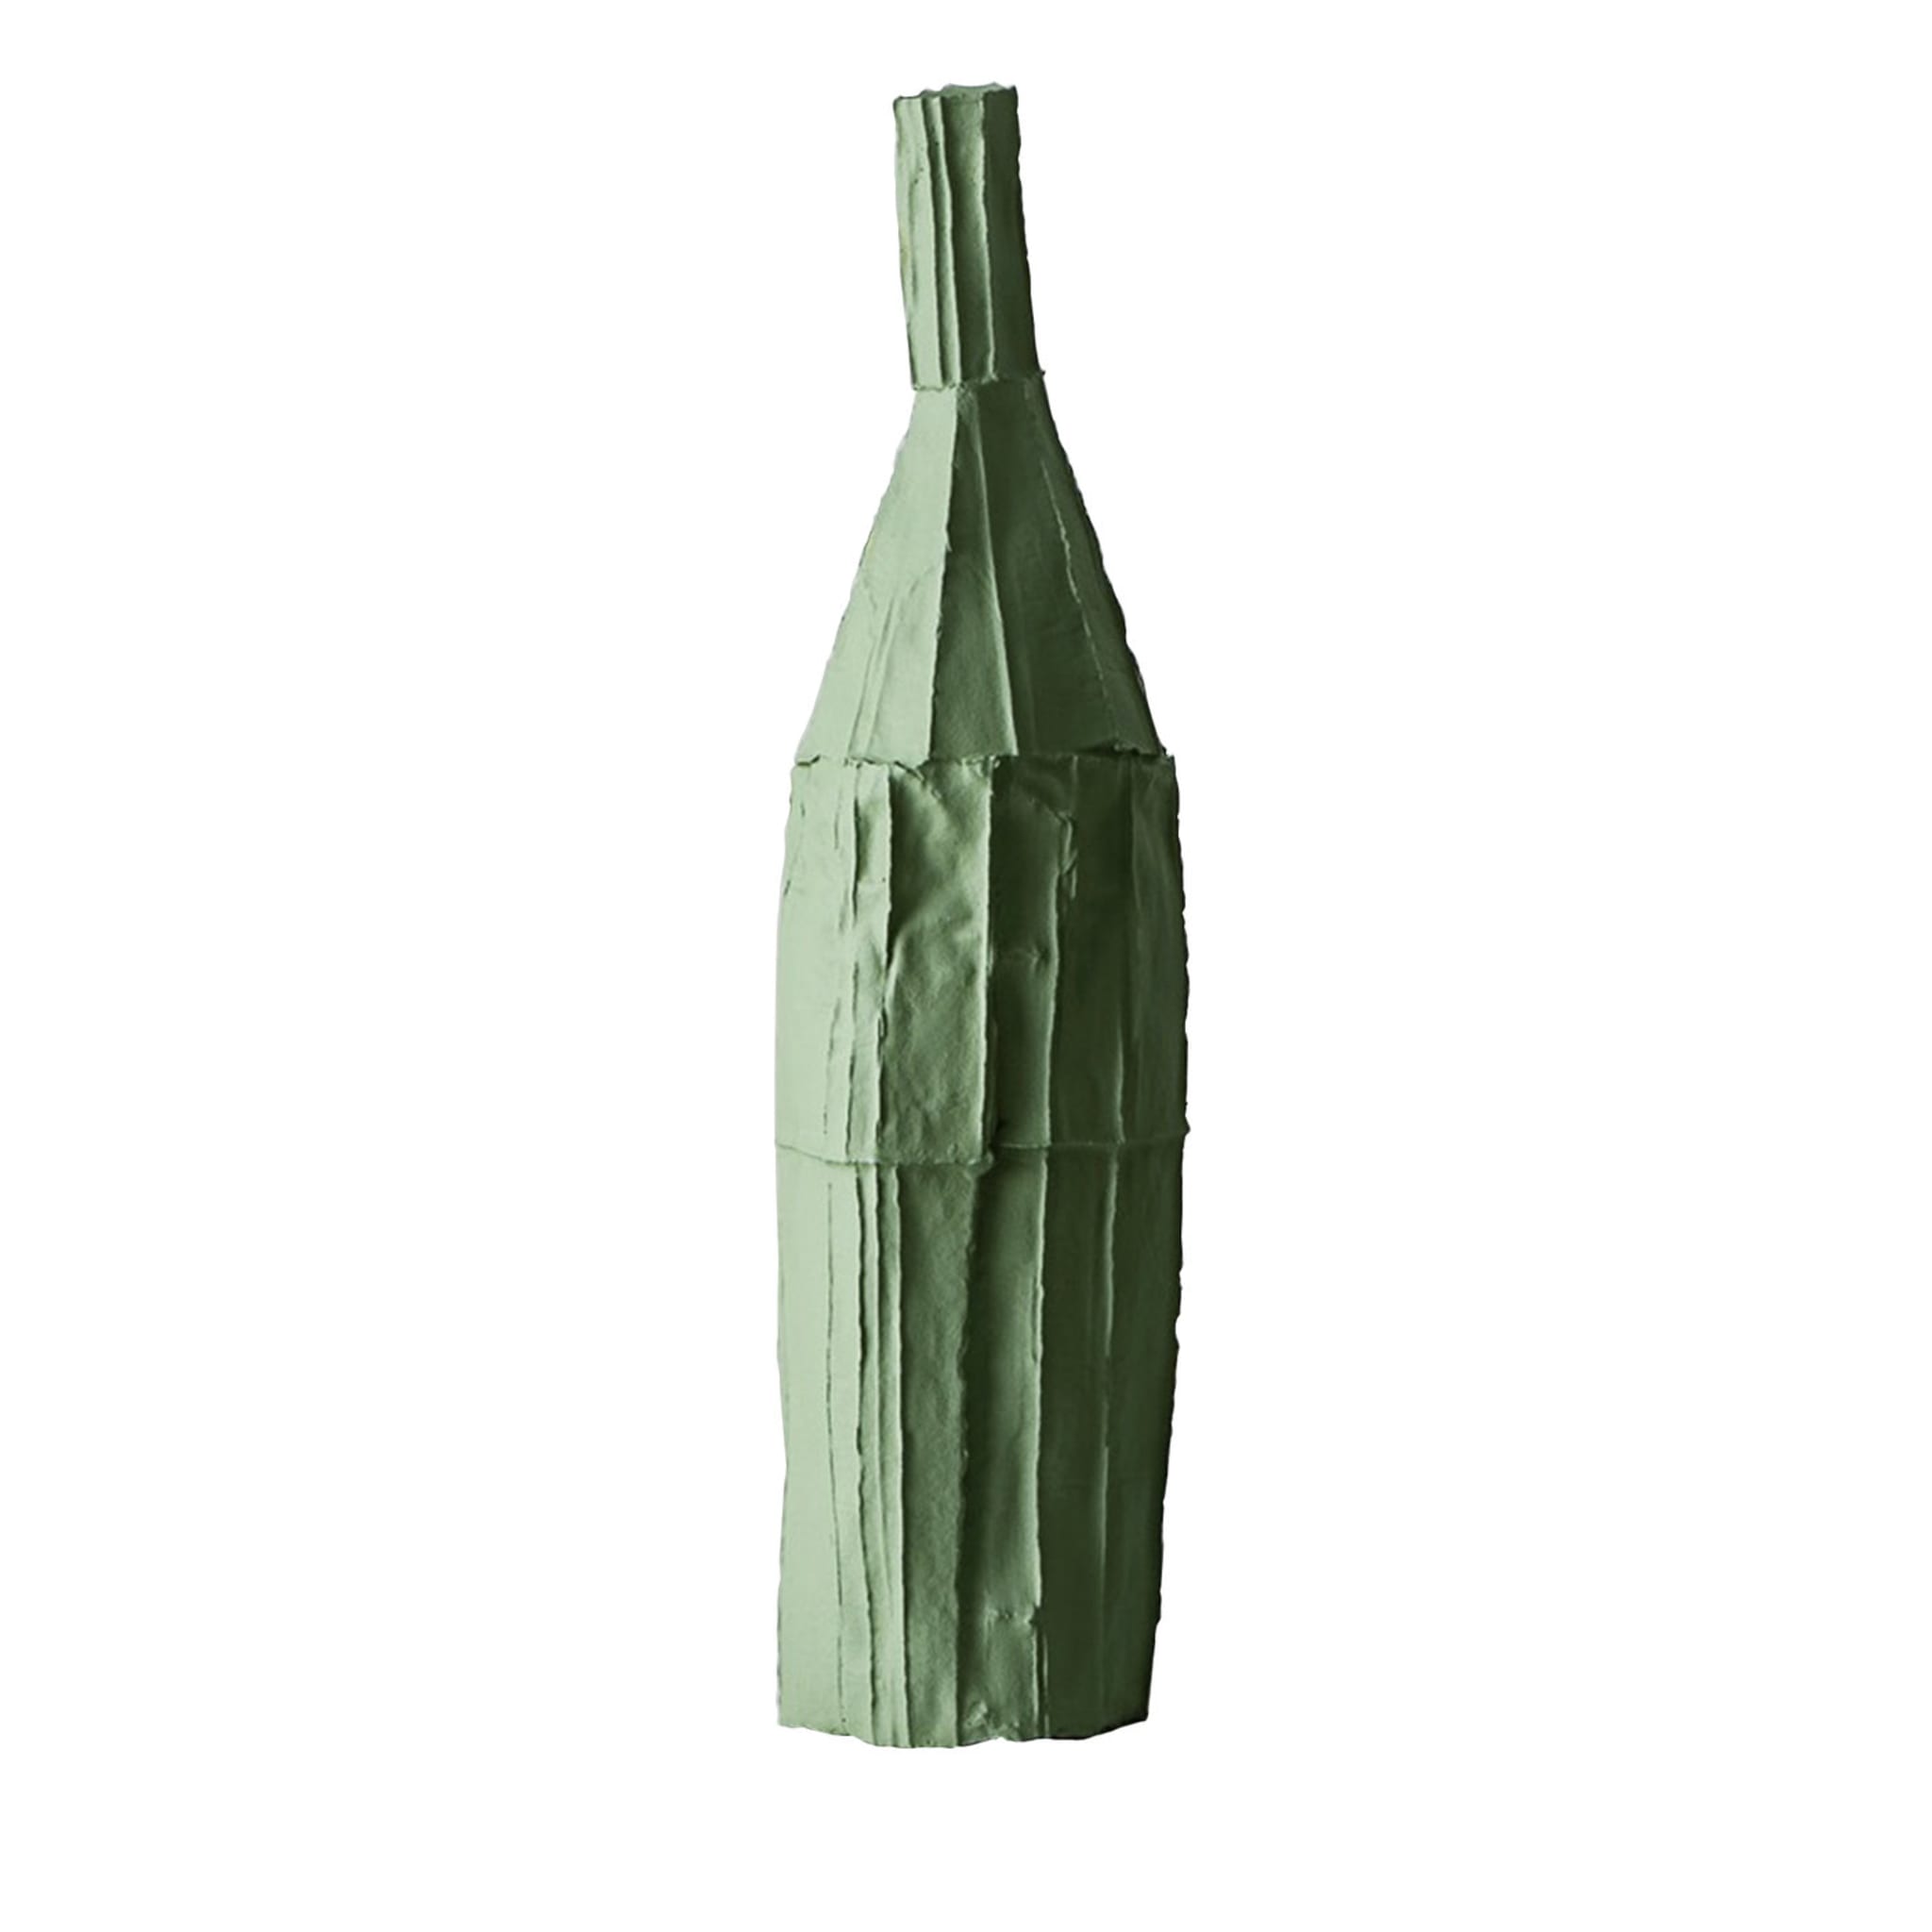 Bottiglia decorativa Cartocci Corteccia verde - Vista principale